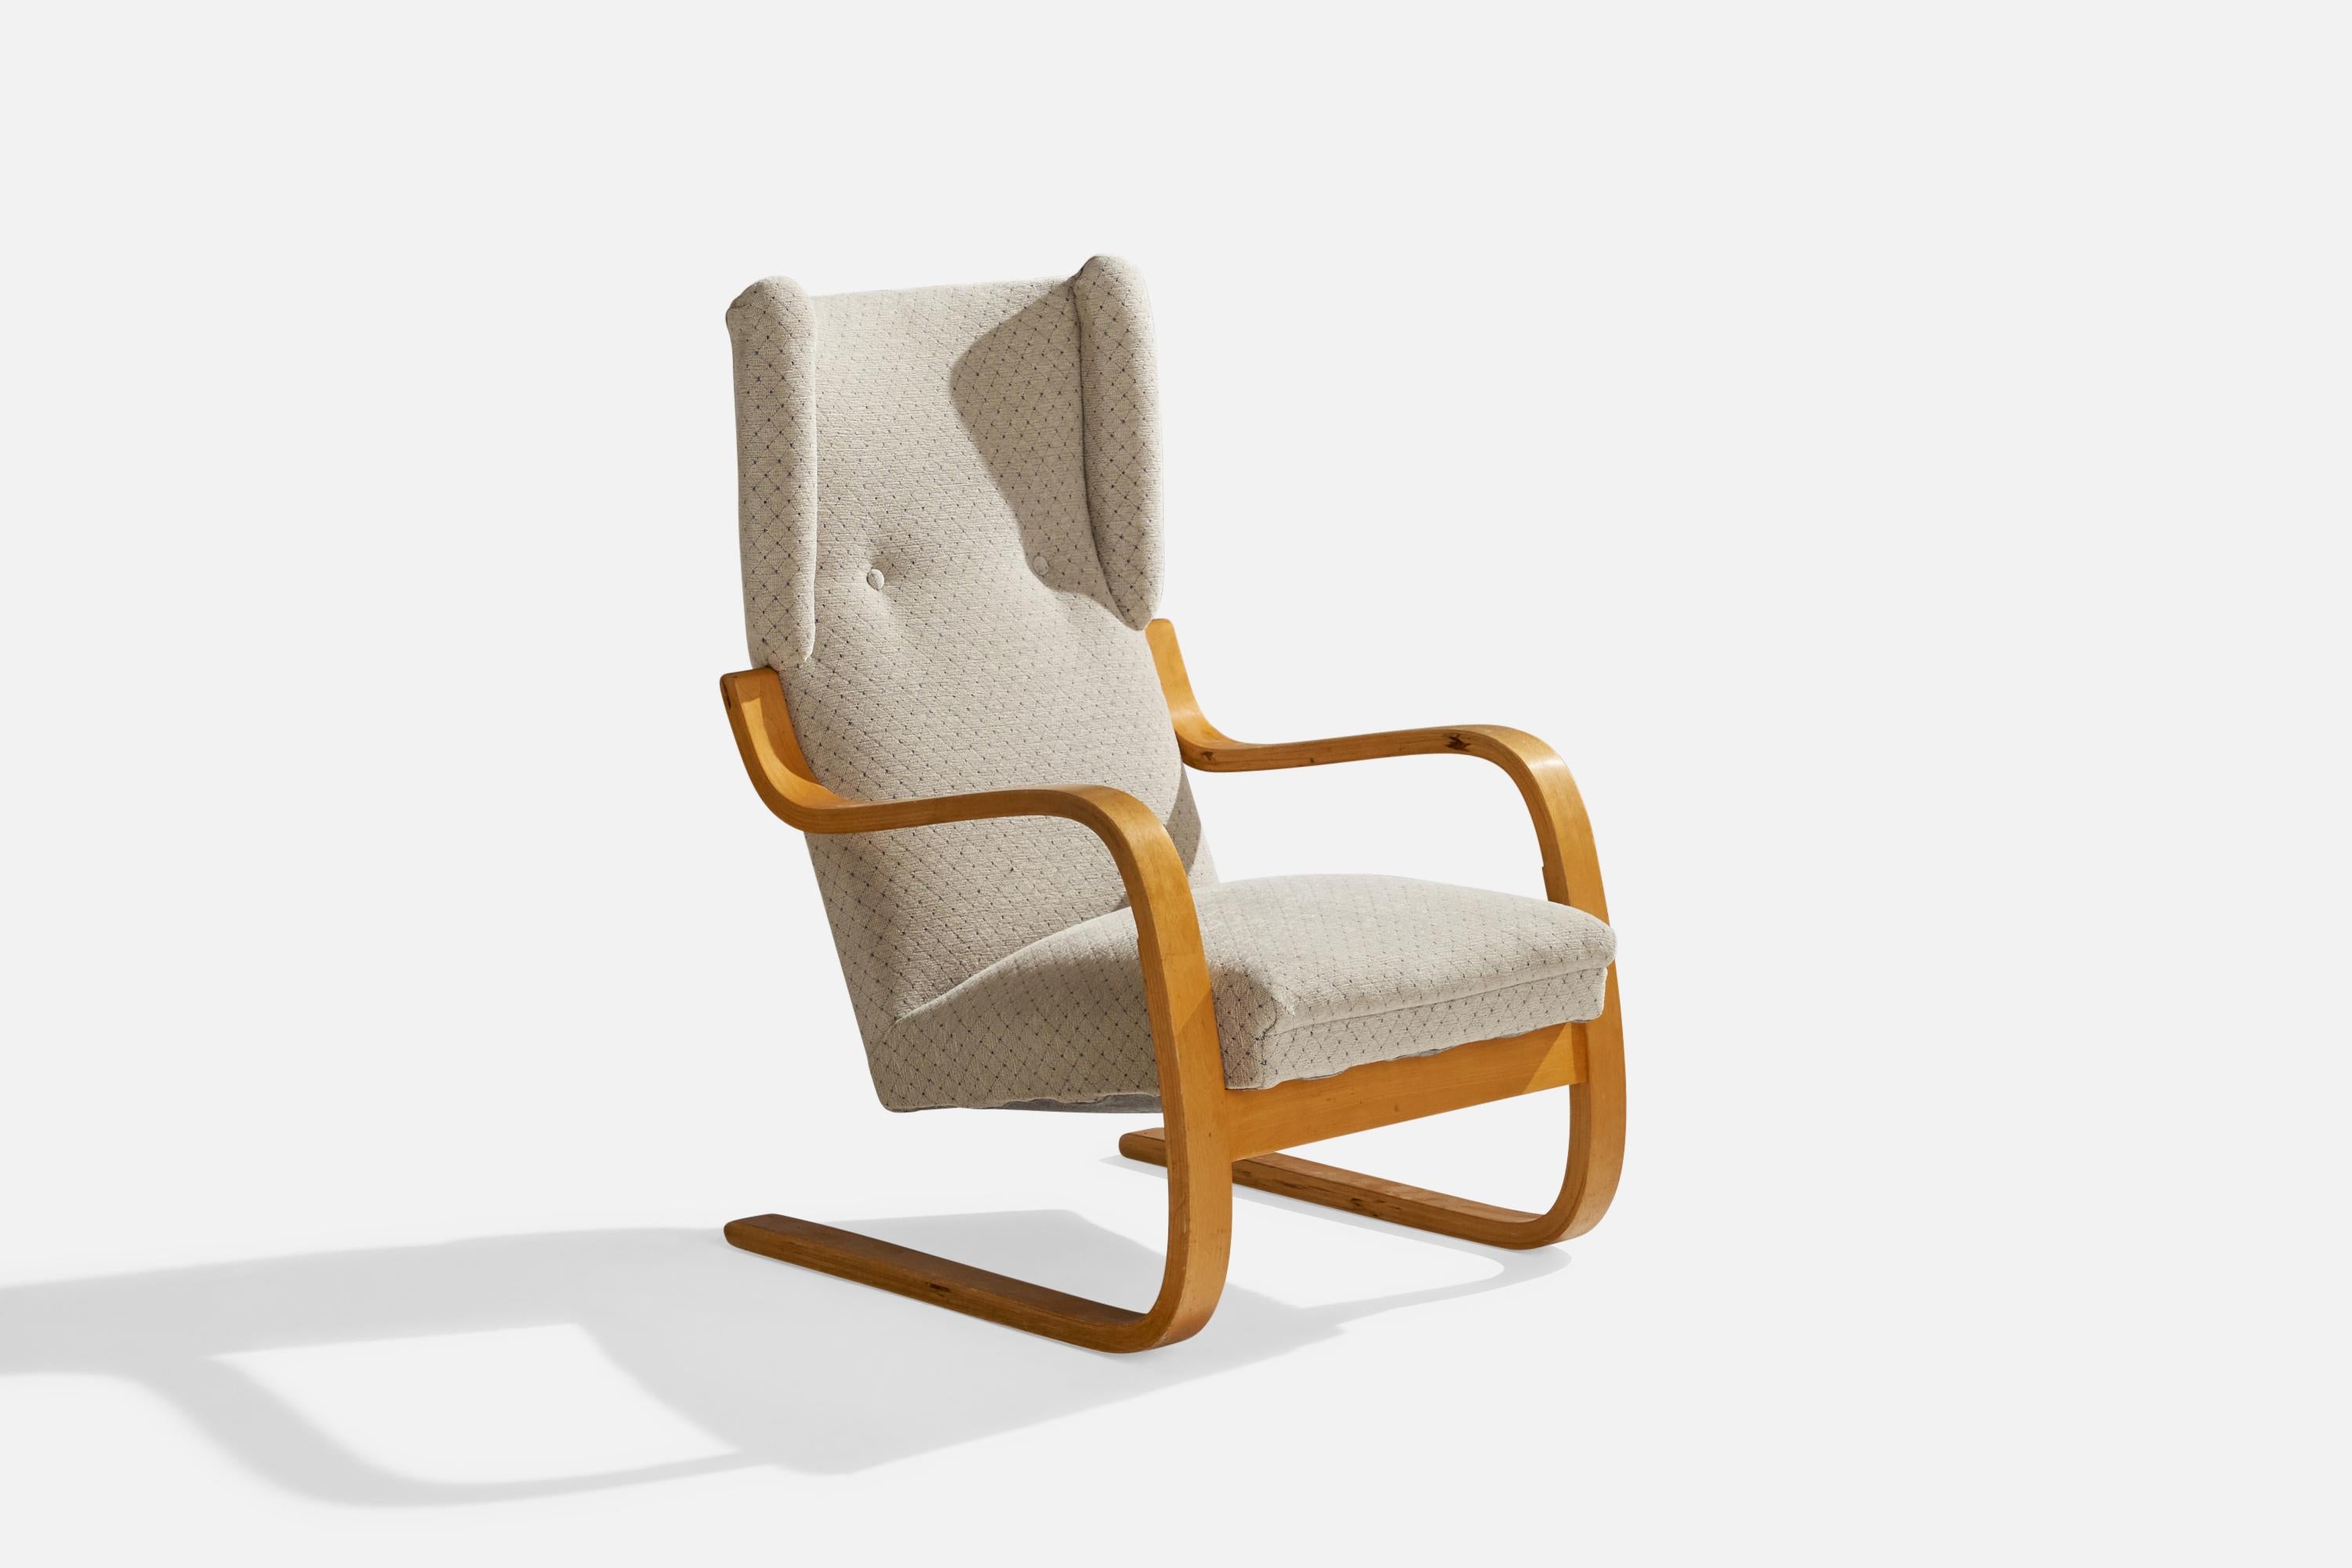 Chaise longue en bouleau moulé et tissu gris clair conçue par Alvar Aalto et produite par Artek, Finlande, C.C. 1970.

hauteur du siège 15